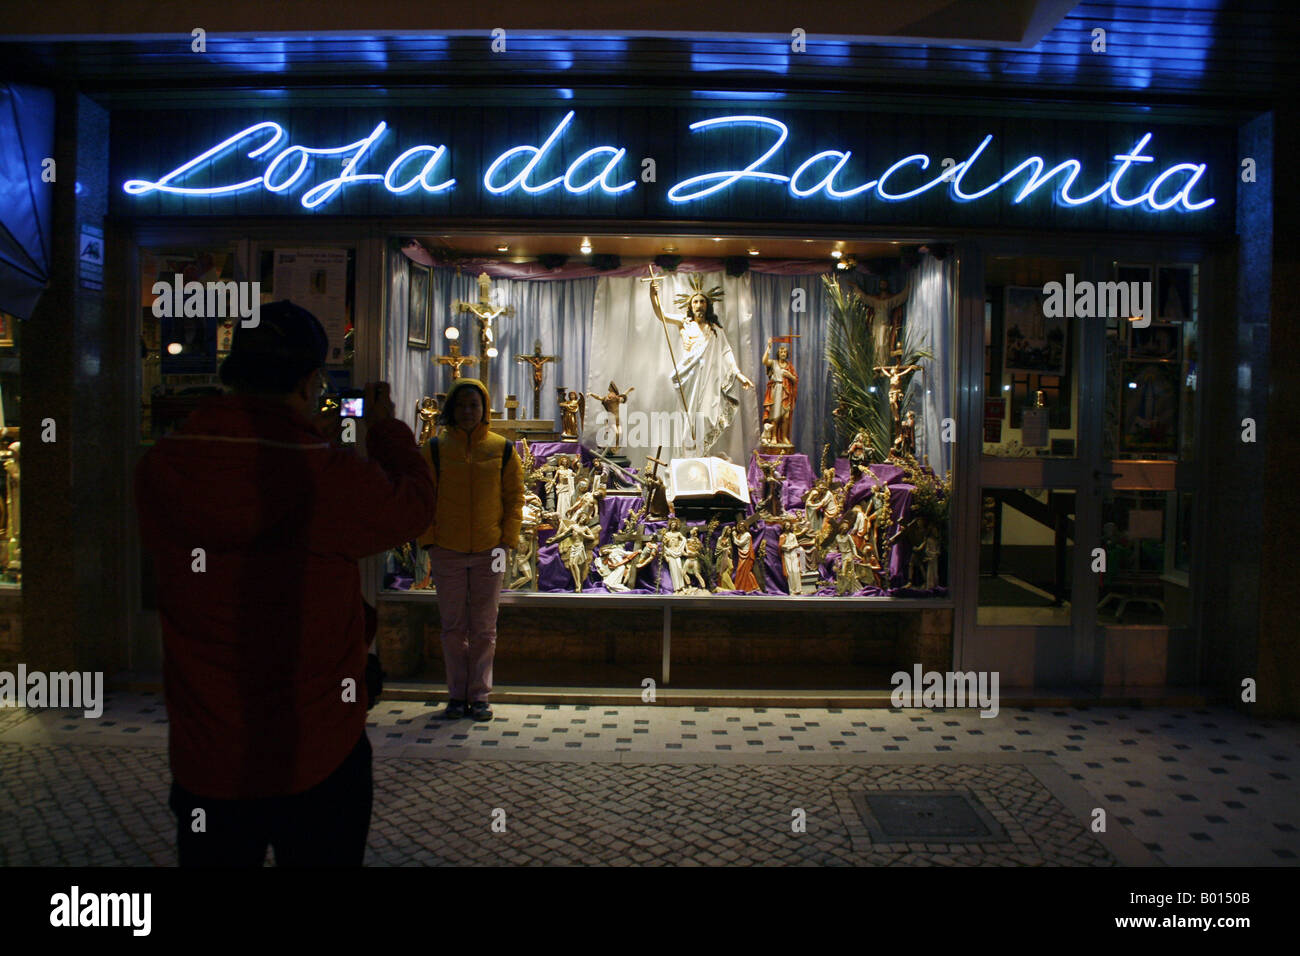 2 touristes posent devant un magasin de vente de souvenirs catholique Fatima, Portugal Banque D'Images